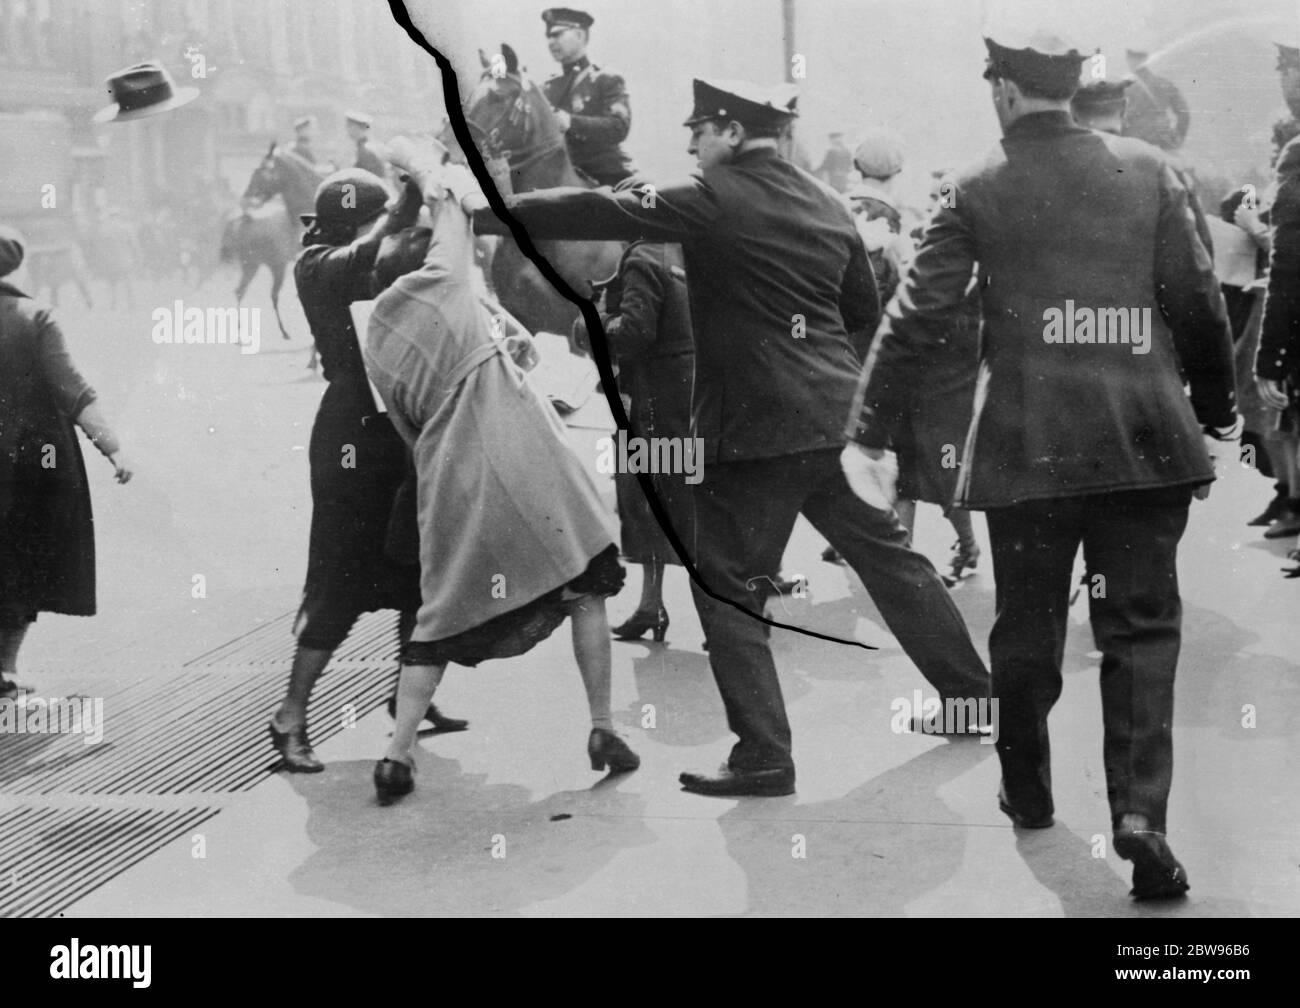 Frauen Rotweine kämpfen in der kommunistischen Demonstration in New York gegen die Polizei. Nach dem Marsch in zwei Linien in entgegengesetzten Richtungen rund um das Rathaus, New York, fordern Bürgermeister Walker zu sehen, Kommunisten demonstrierten vor dem Gebäude und die Polizei waren gezwungen, sie zu laden, bevor sie zerstreuen würde. Polizei kämpft mit Frauen Kommunisten vor der City Hall, New York. 29. April 1932 Stockfoto